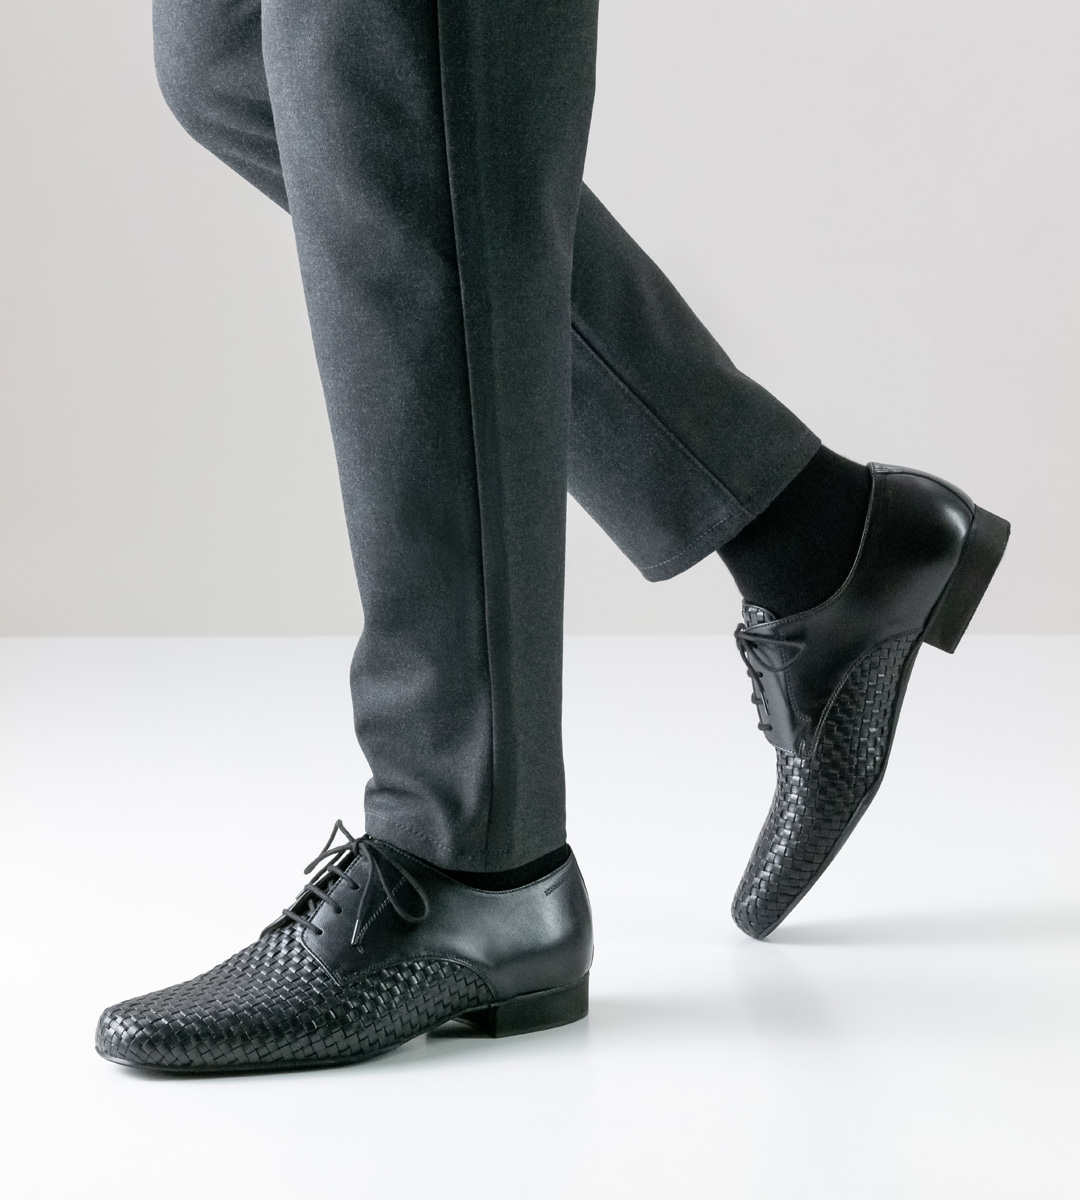 2 cm hoher Werner Kern Herrentanzschuh in schwarzem Leder in Kombination mit Hose in grau